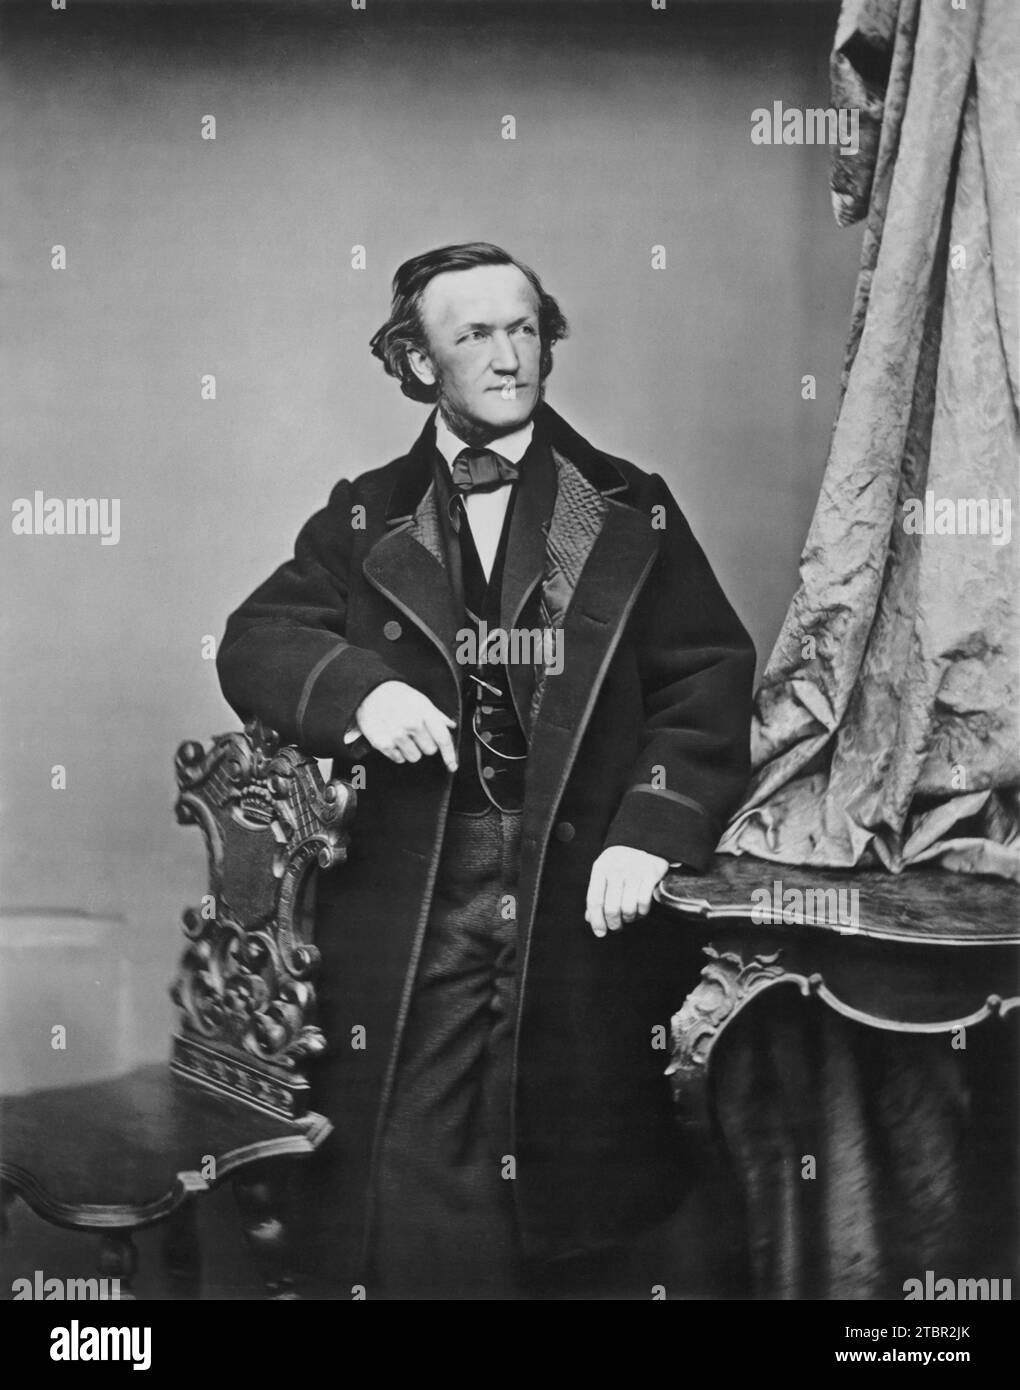 Richard Wagner um 1860. Foto von Franz Hanfstaengl. Hinweis: Die Fläche wurde digital verbessert, um Details zu schärfen. Stockfoto